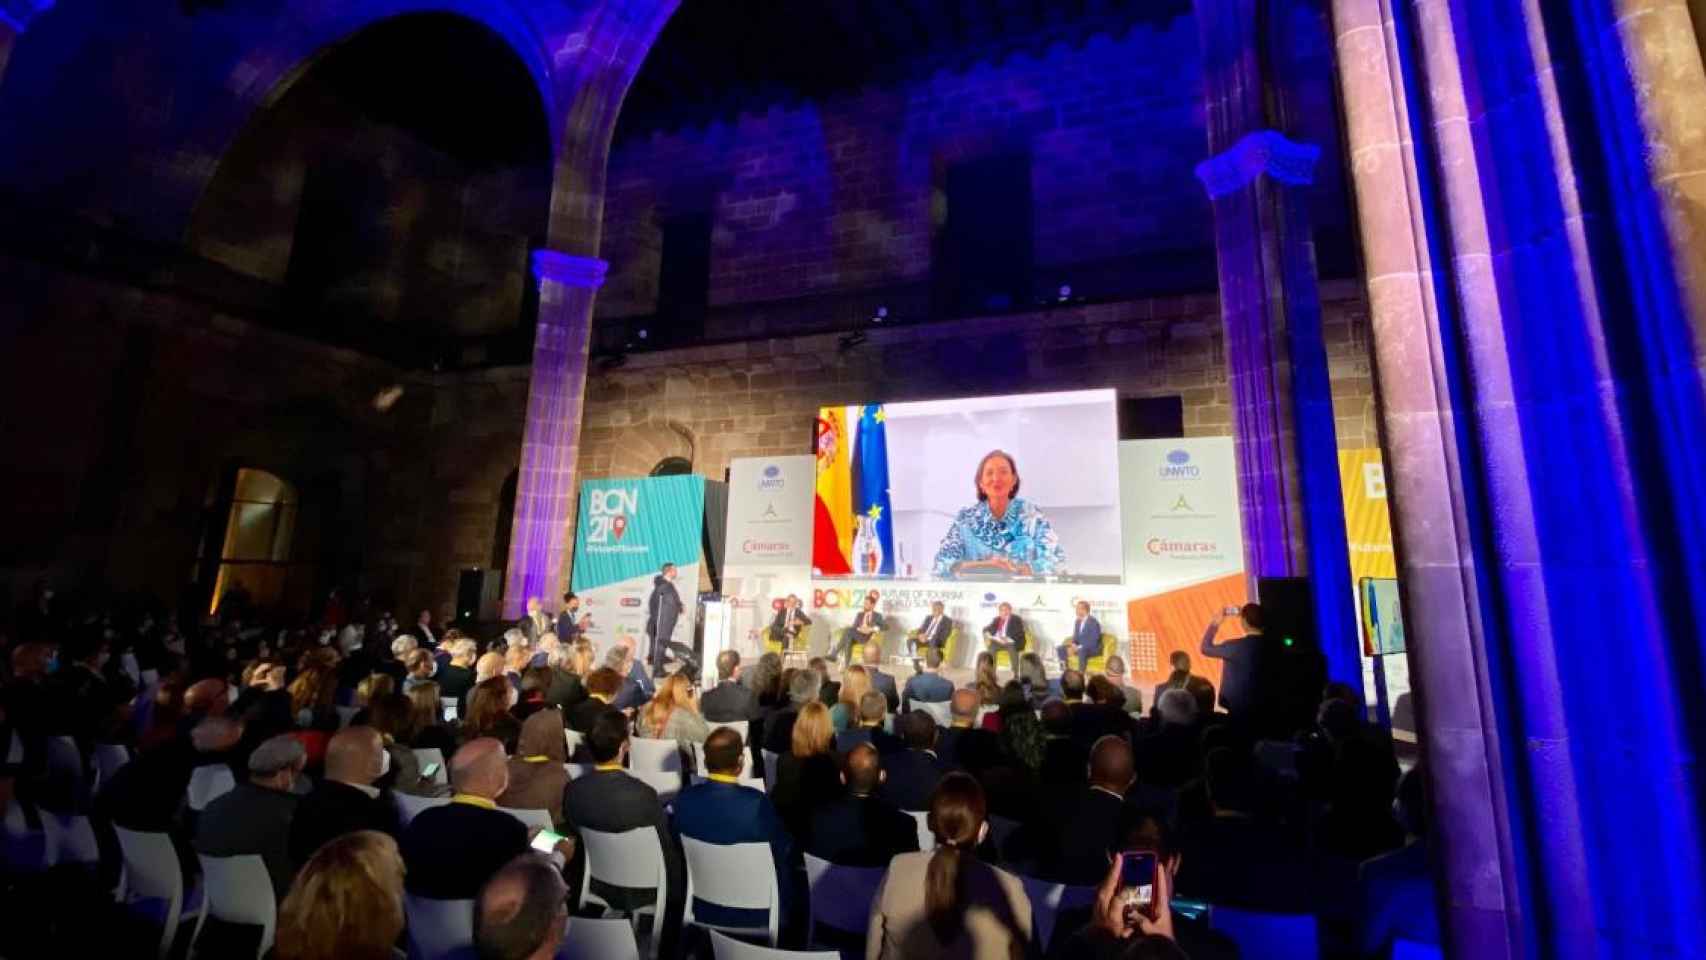 El acto de inauguración del Future of Tourism World Summit en la Llotja de Mar de Barcelona / CG